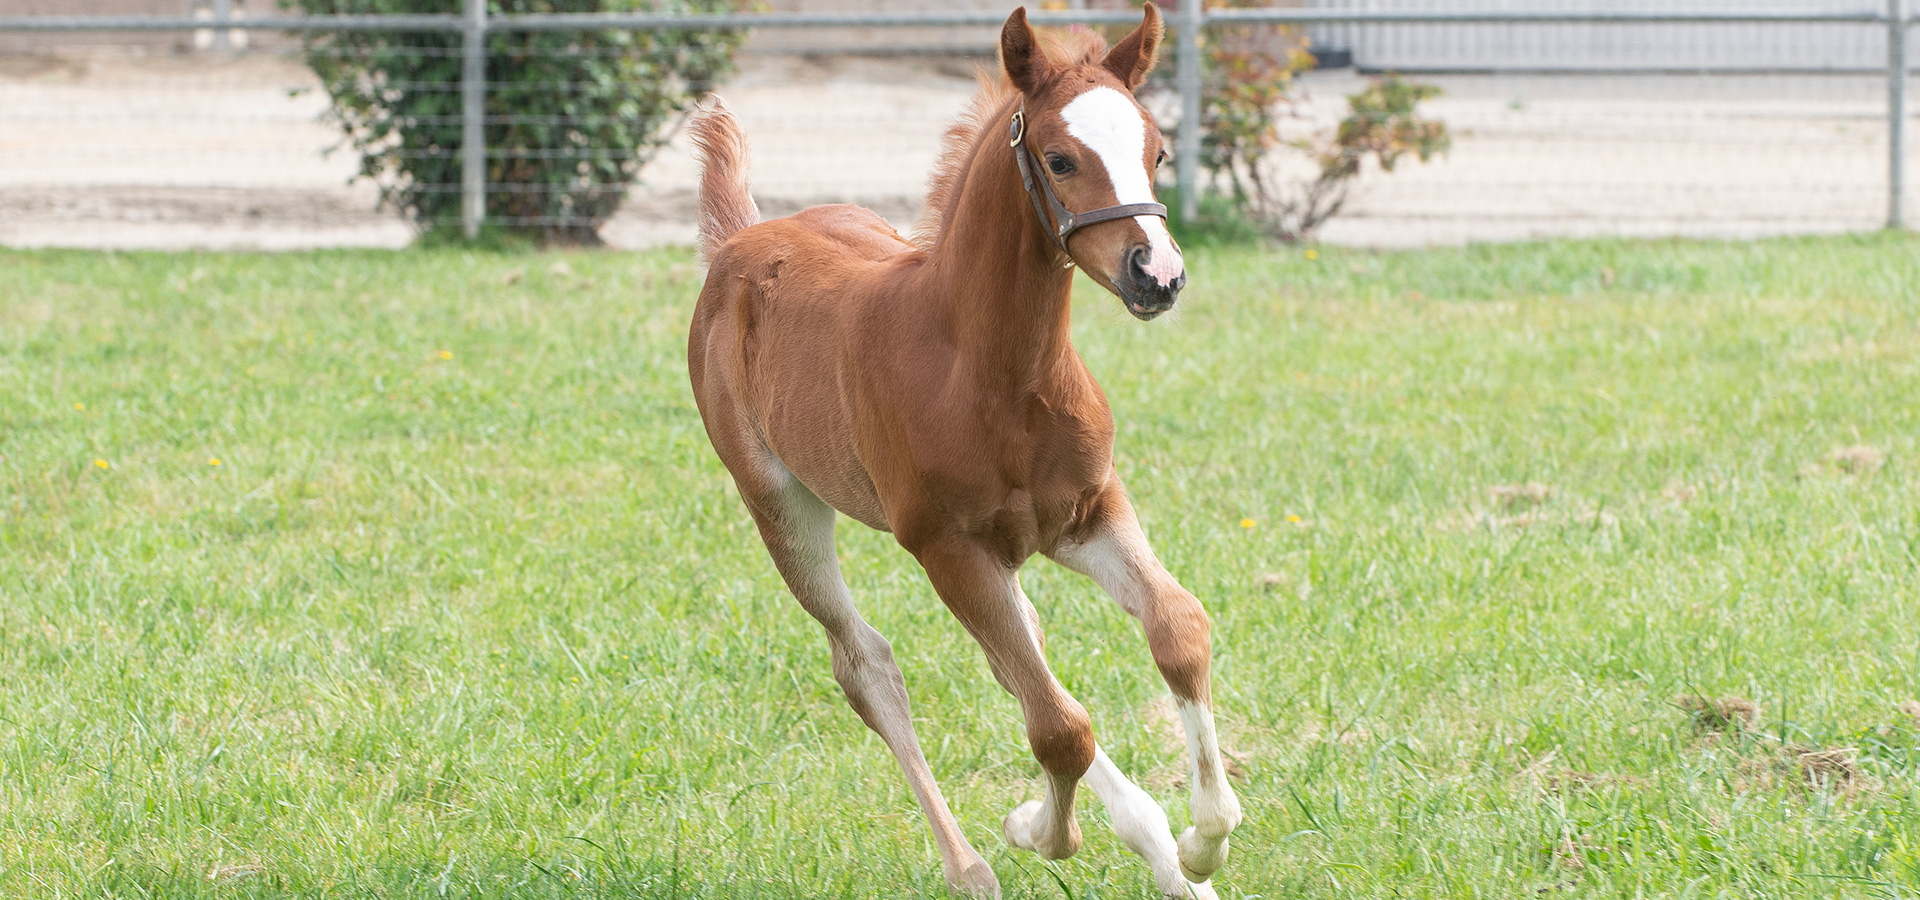 Julio, a colt born March 27